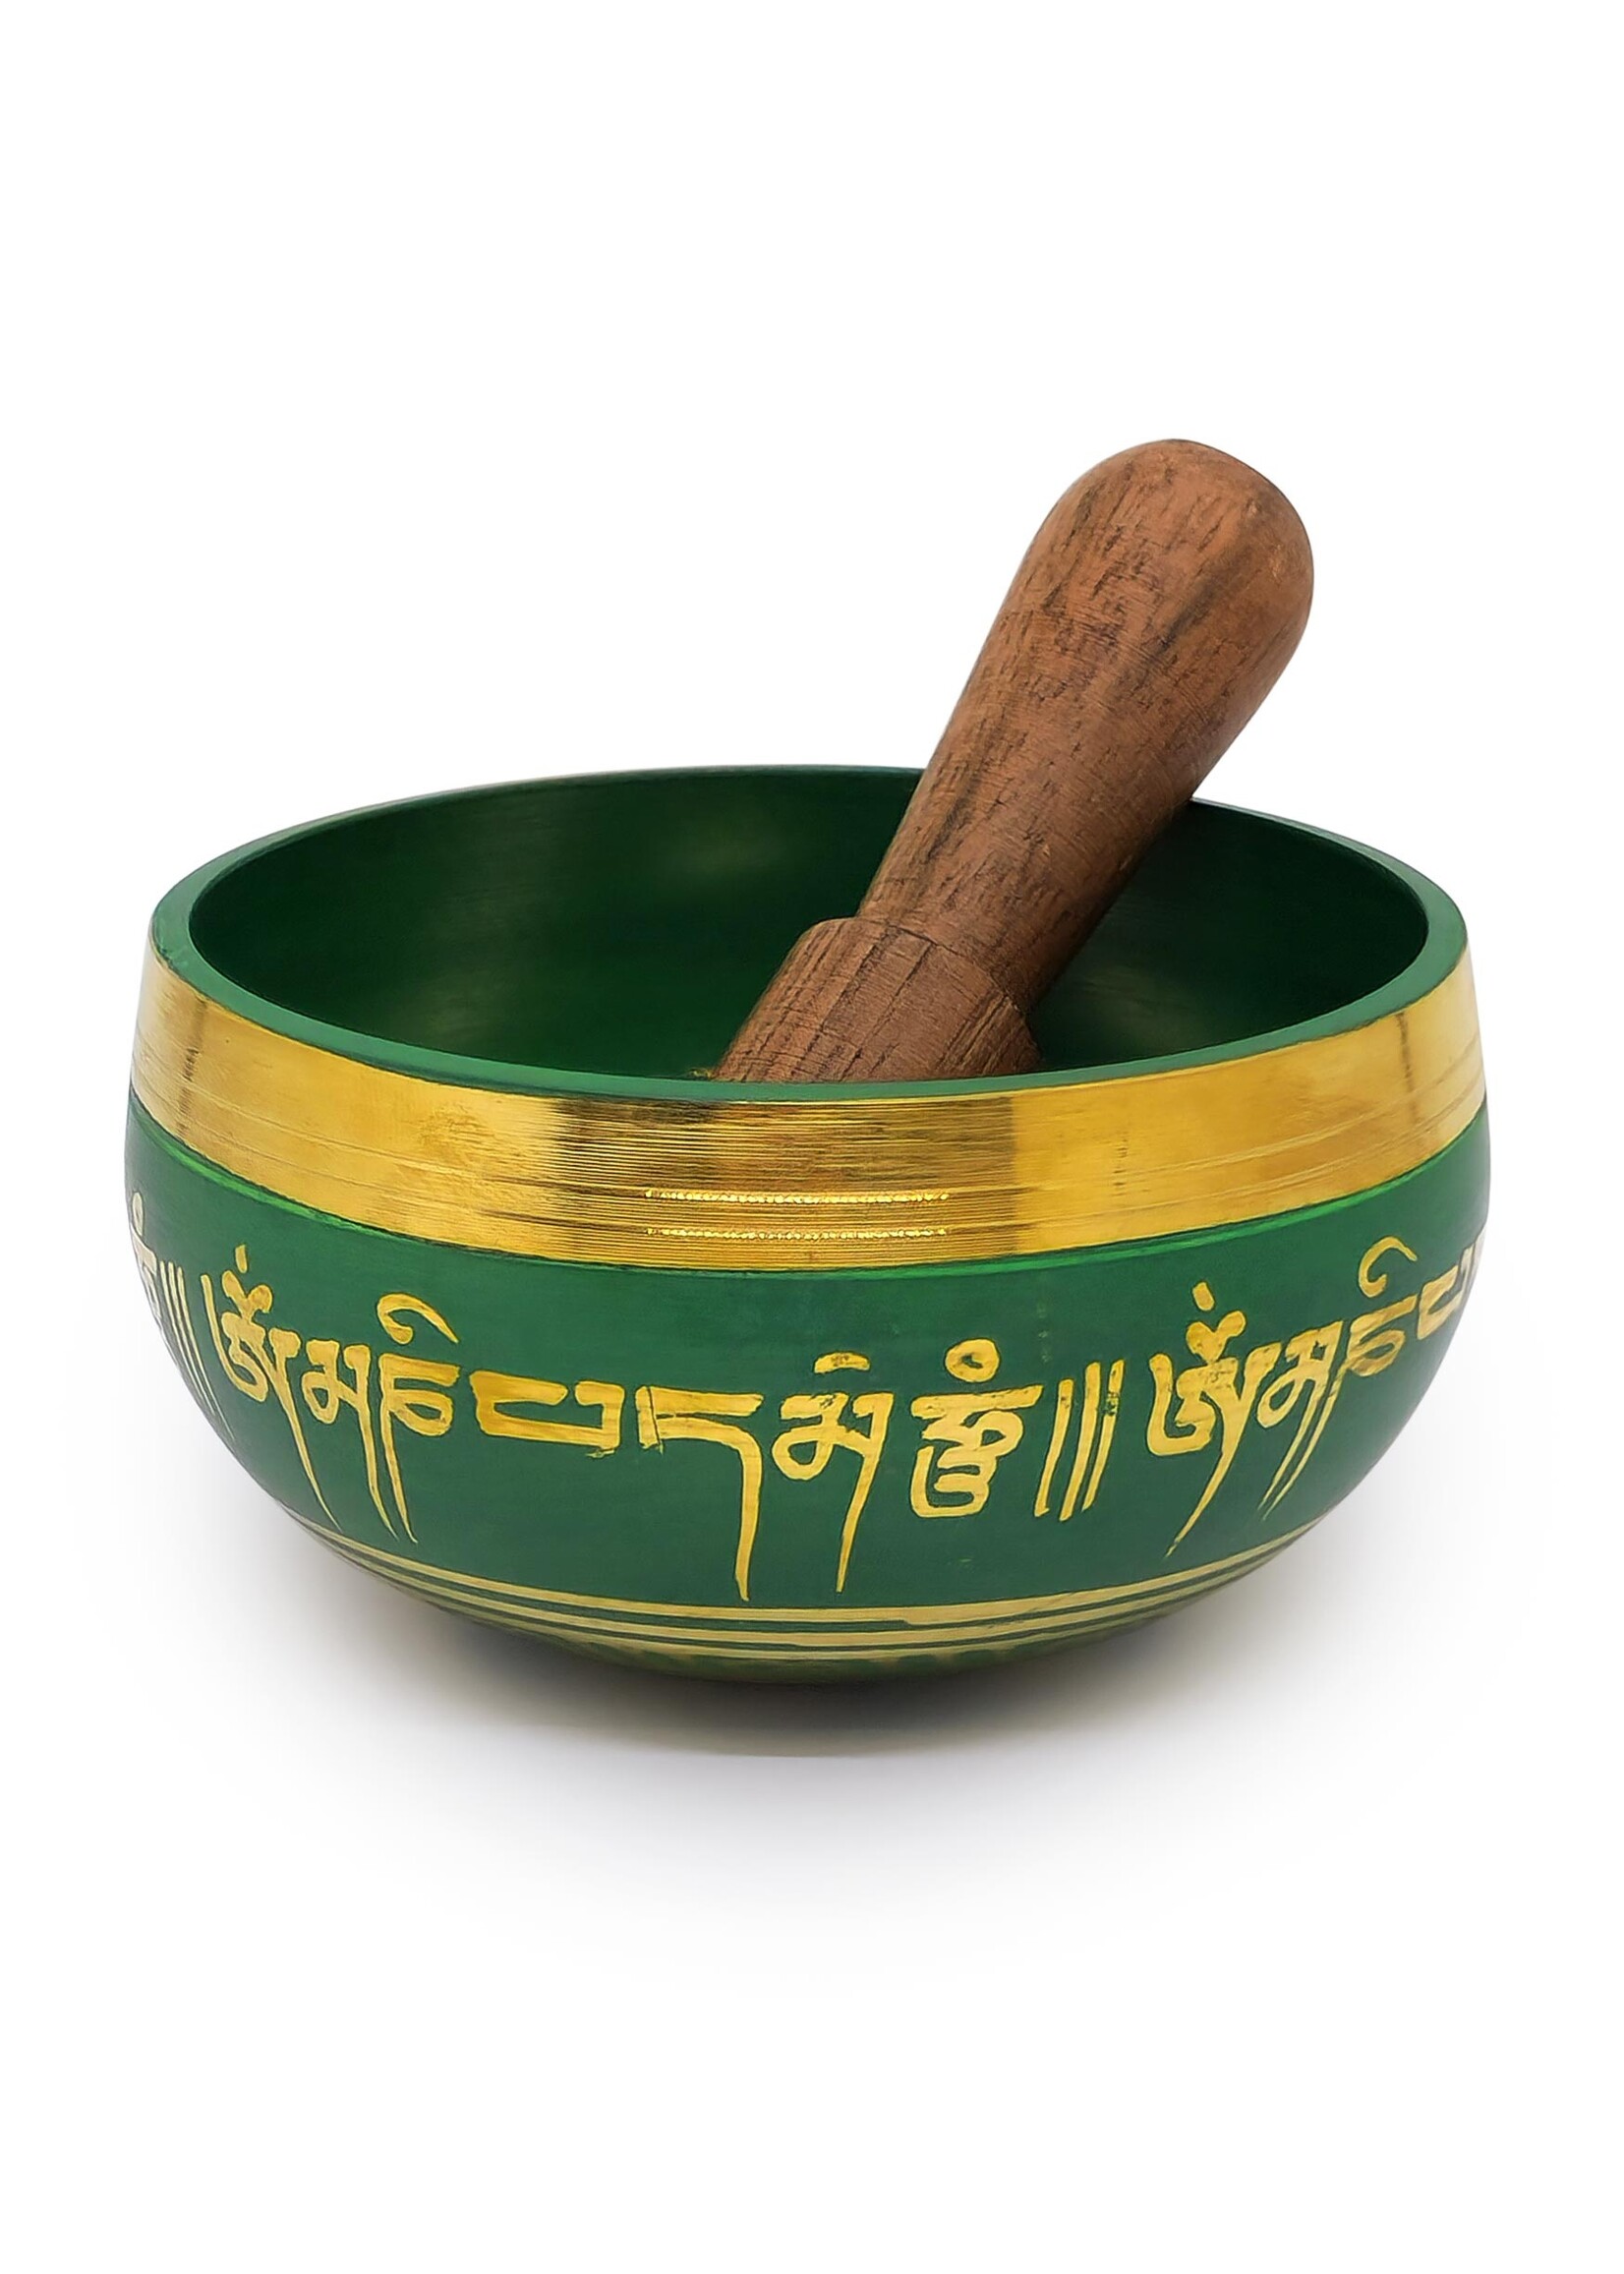 Tibetische Klangschale aus Messing mit Mantra, 3-teilig, grün, Ø 8cm, 190g